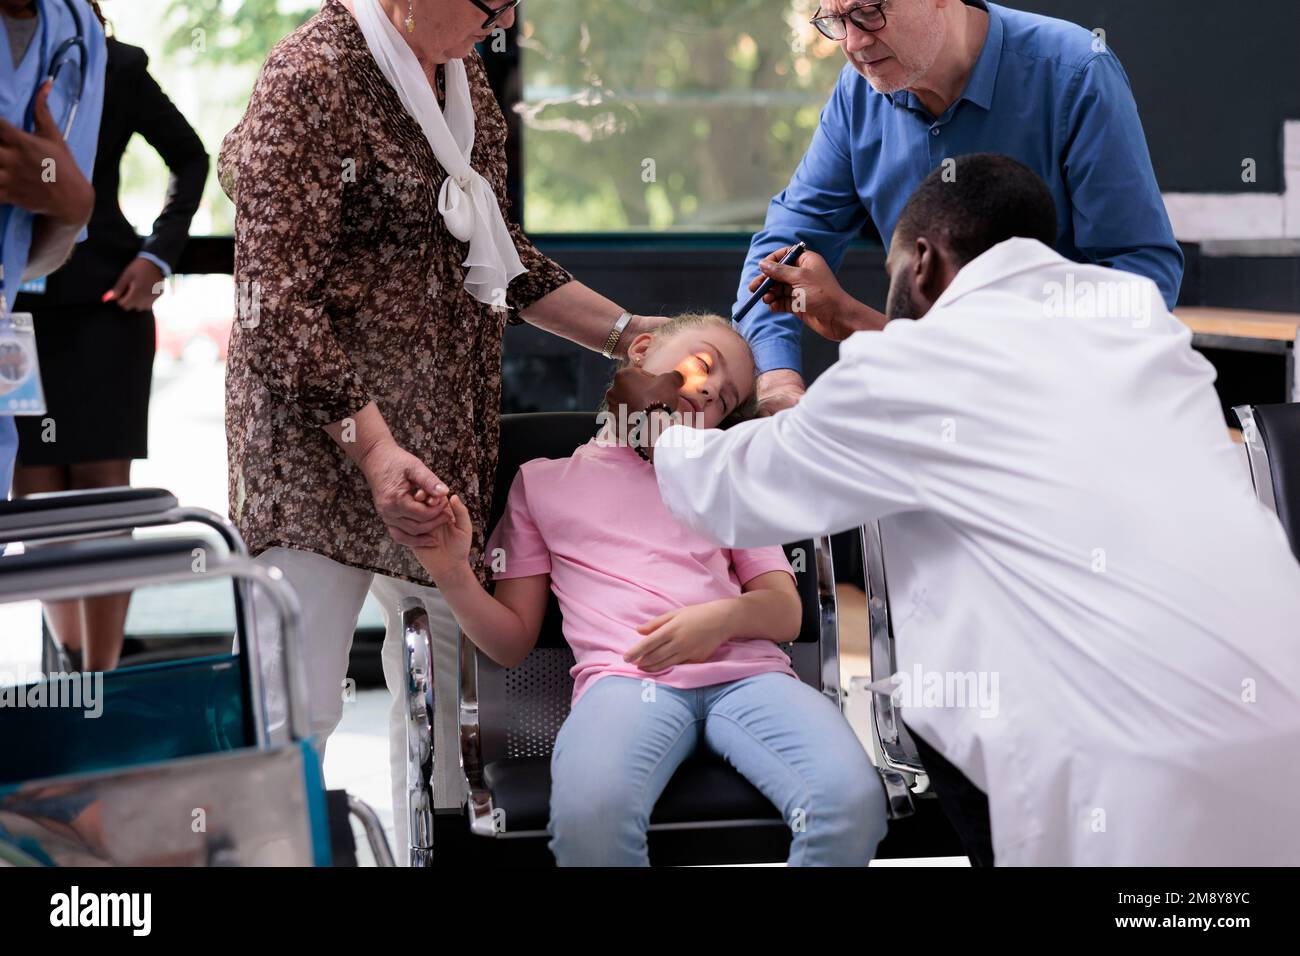 Medico medico che illumina l'occhio di un bambino mentre esamina i riflessi della pupilla durante la visita di controllo nella zona di attesa dell'ospedale. Bambino inconscio svenente sulla sedia Foto Stock